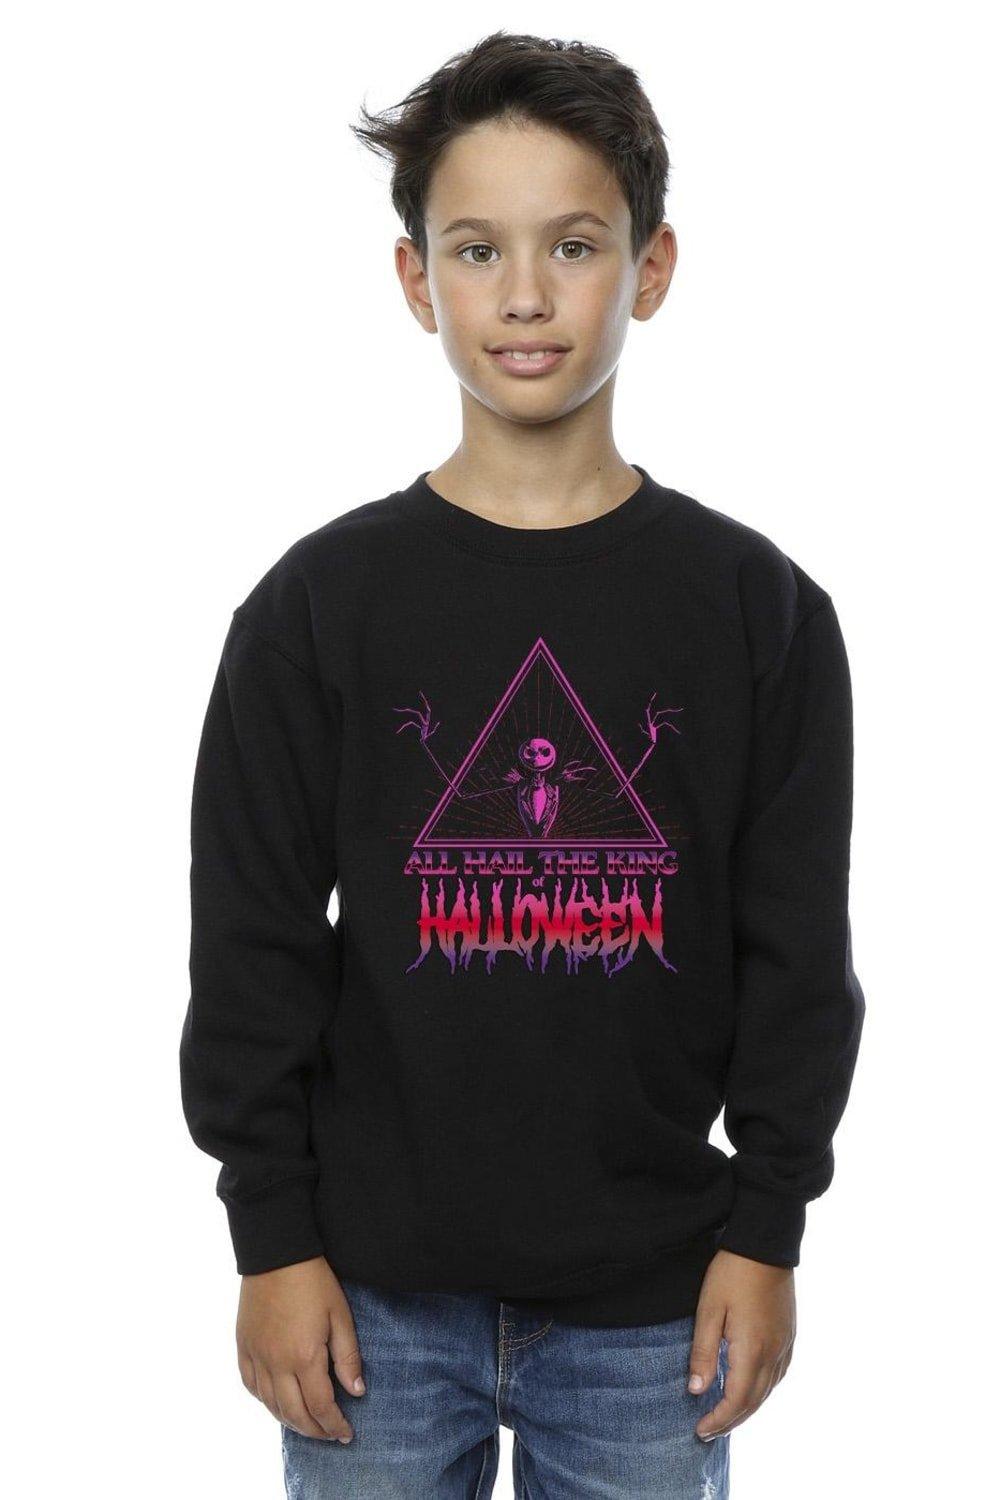 The Nightmare Before Christmas Halloween King Sweatshirt